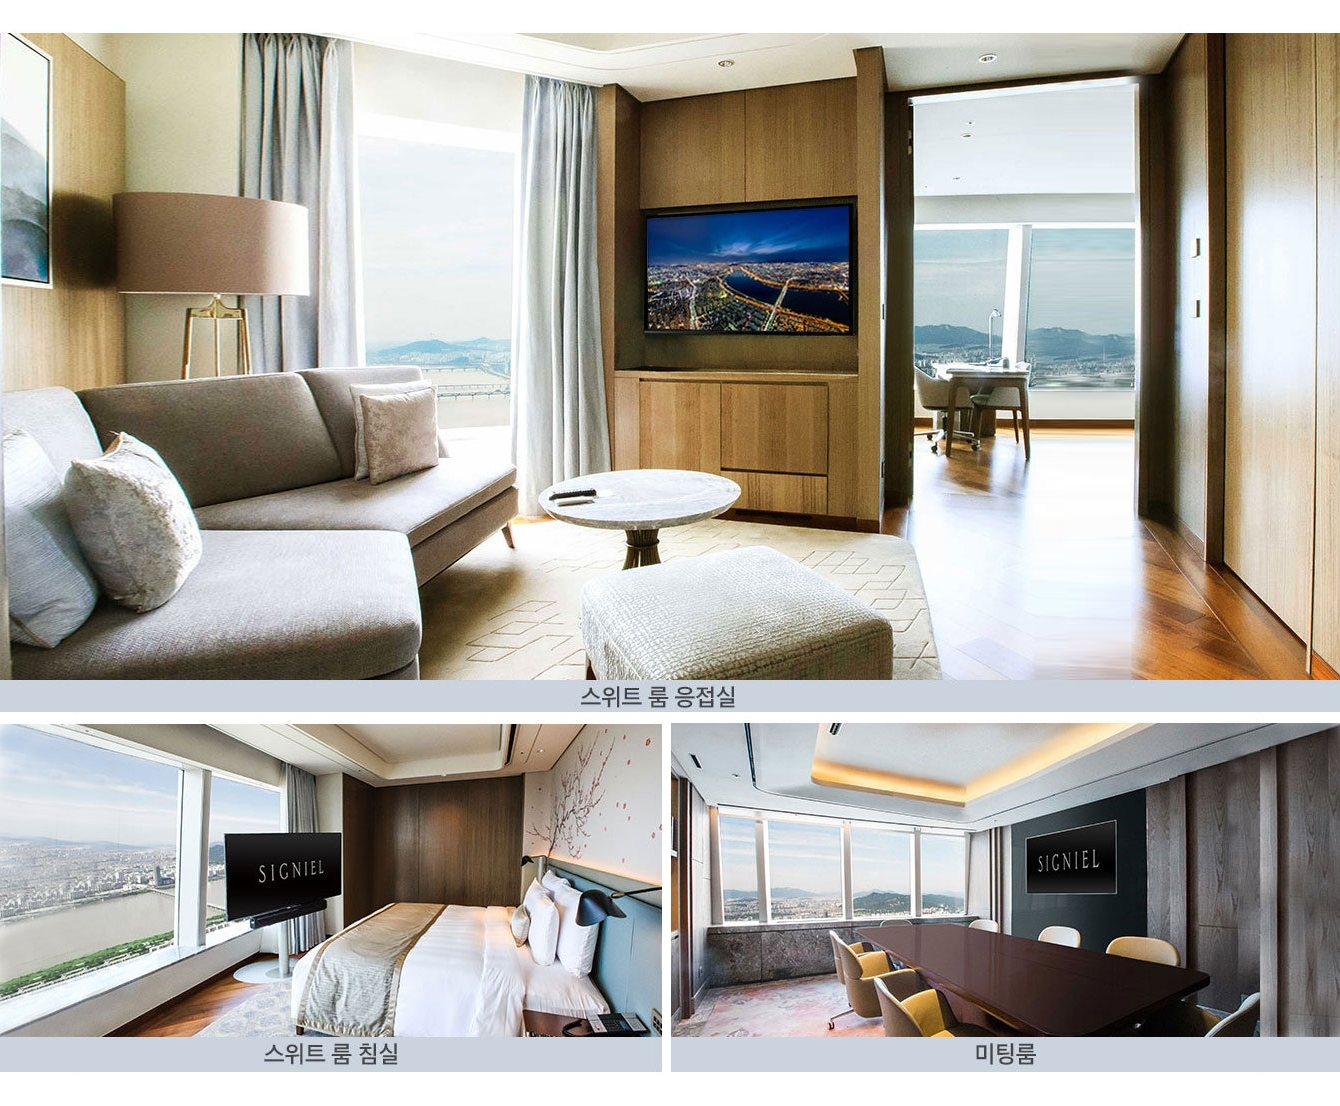 삼성 비즈니스 TV가 설치된 시그니엘 호텔 스위트 룸 응접실, 스위트 룸 침실, 미티룸 사진